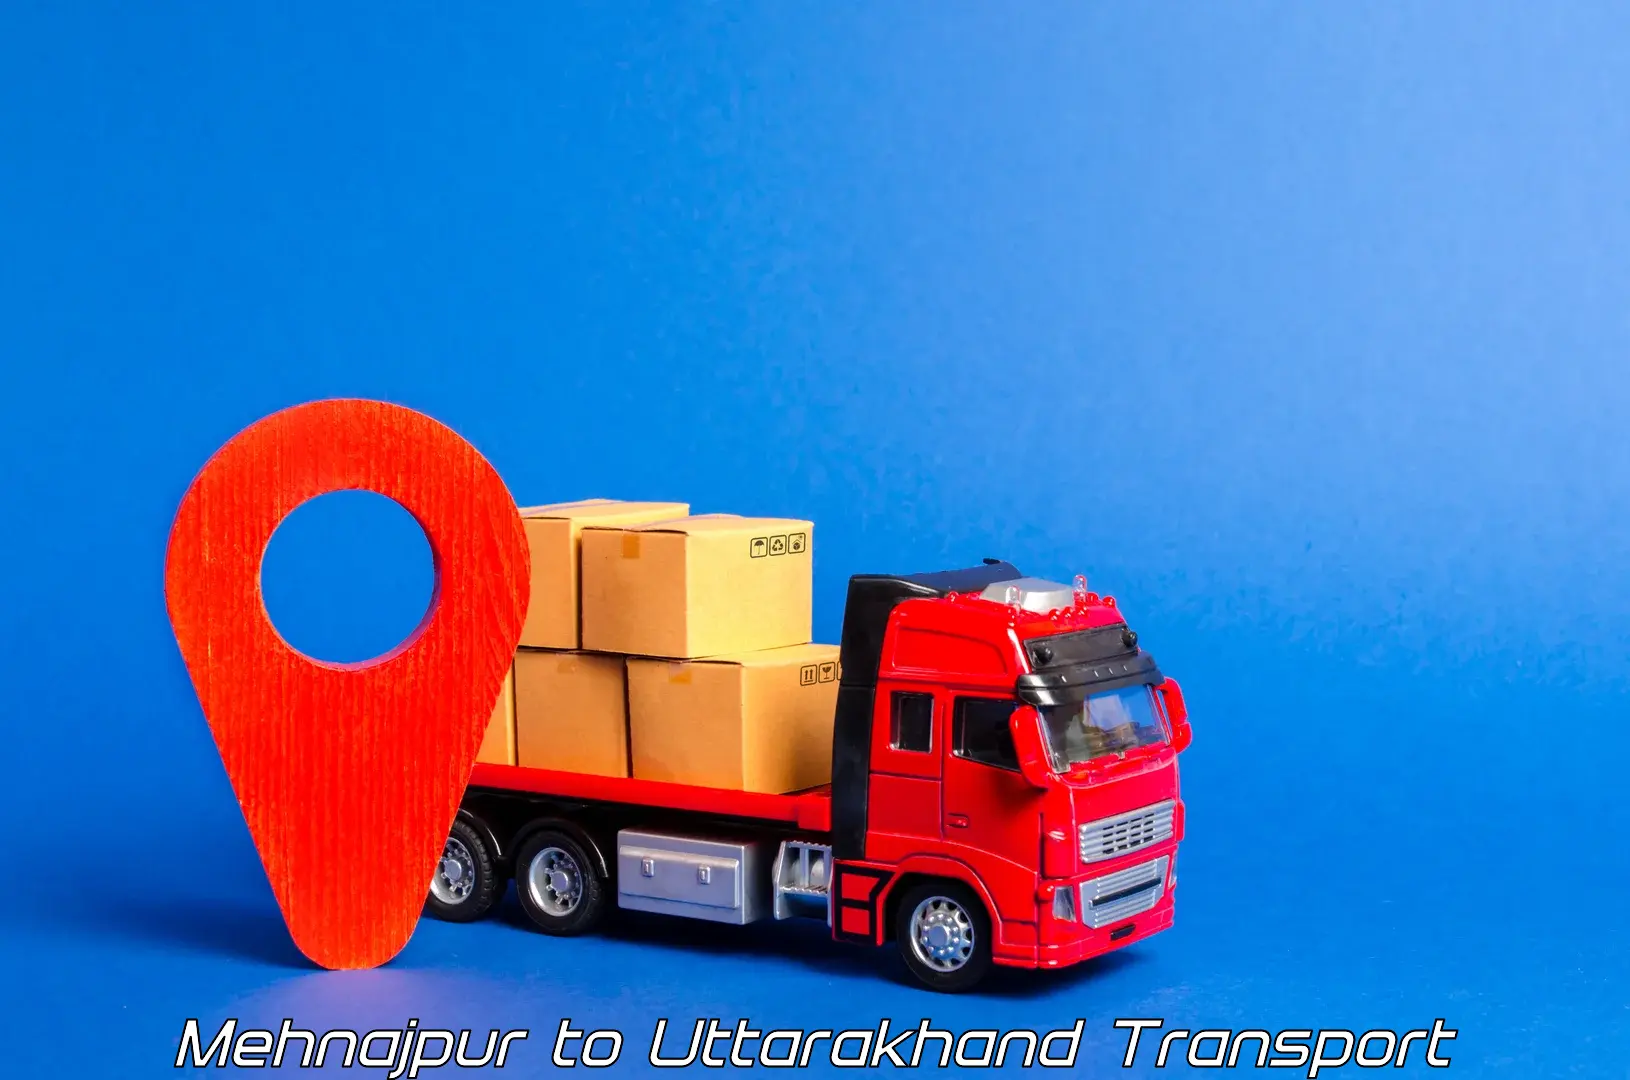 Transport in sharing Mehnajpur to Uttarakhand